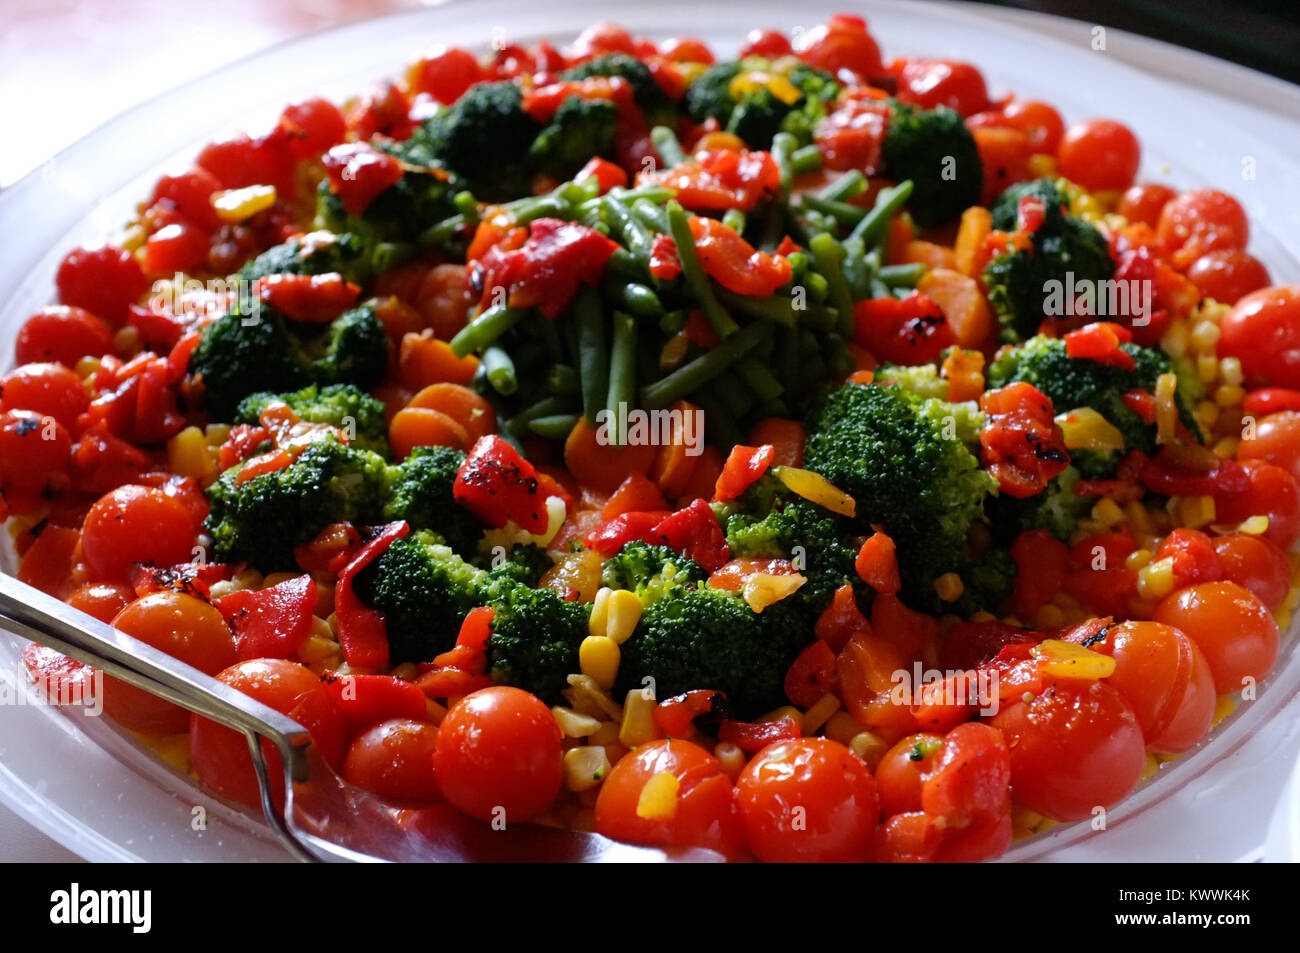 Tomate italienne typique sain et un plat de légumes prêts à être manger sur la plaque. Florence Italie Banque D'Images